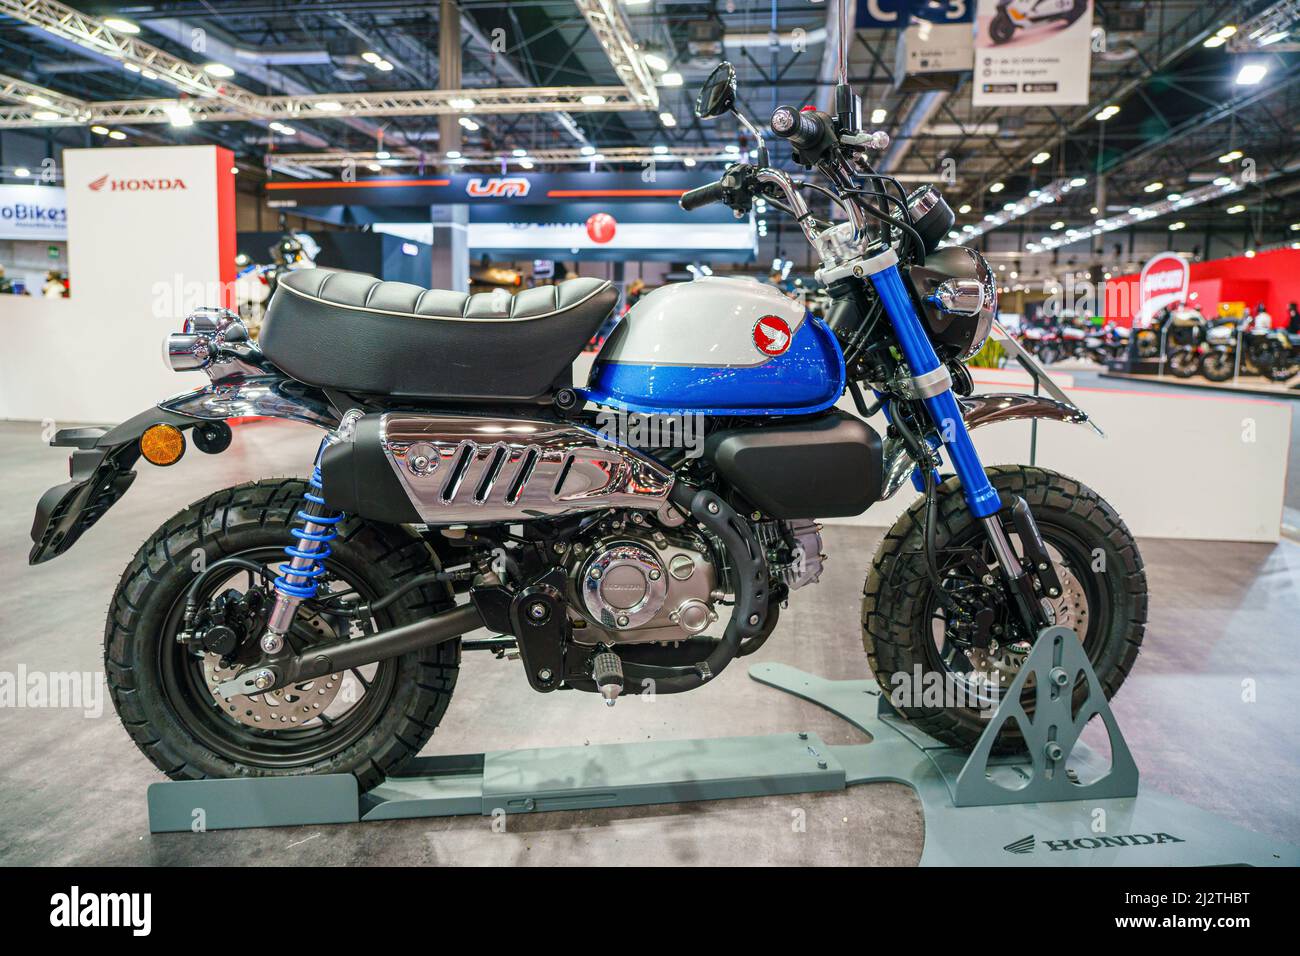 La marque Honda Motorcycle Monkey Model est exposée au salon de la moto  (vive la moto) à Madrid. Vive la moto est la deuxième édition de  l'événement consacré au secteur de la